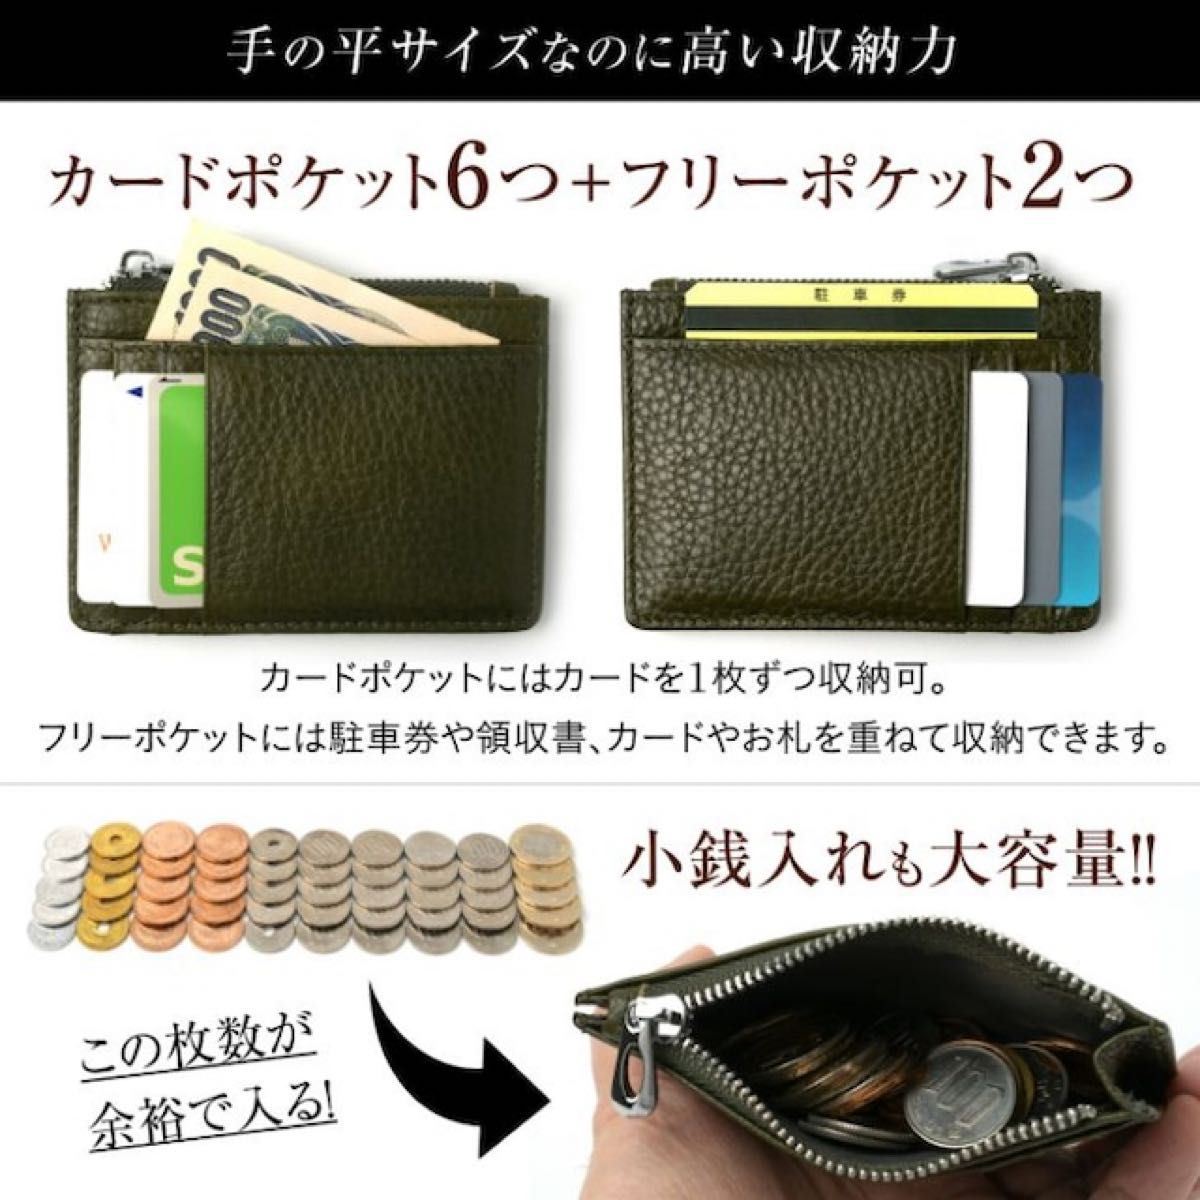 新品未使用 進化形ポケット財布 本革フラグメントケース ブルー ミニ